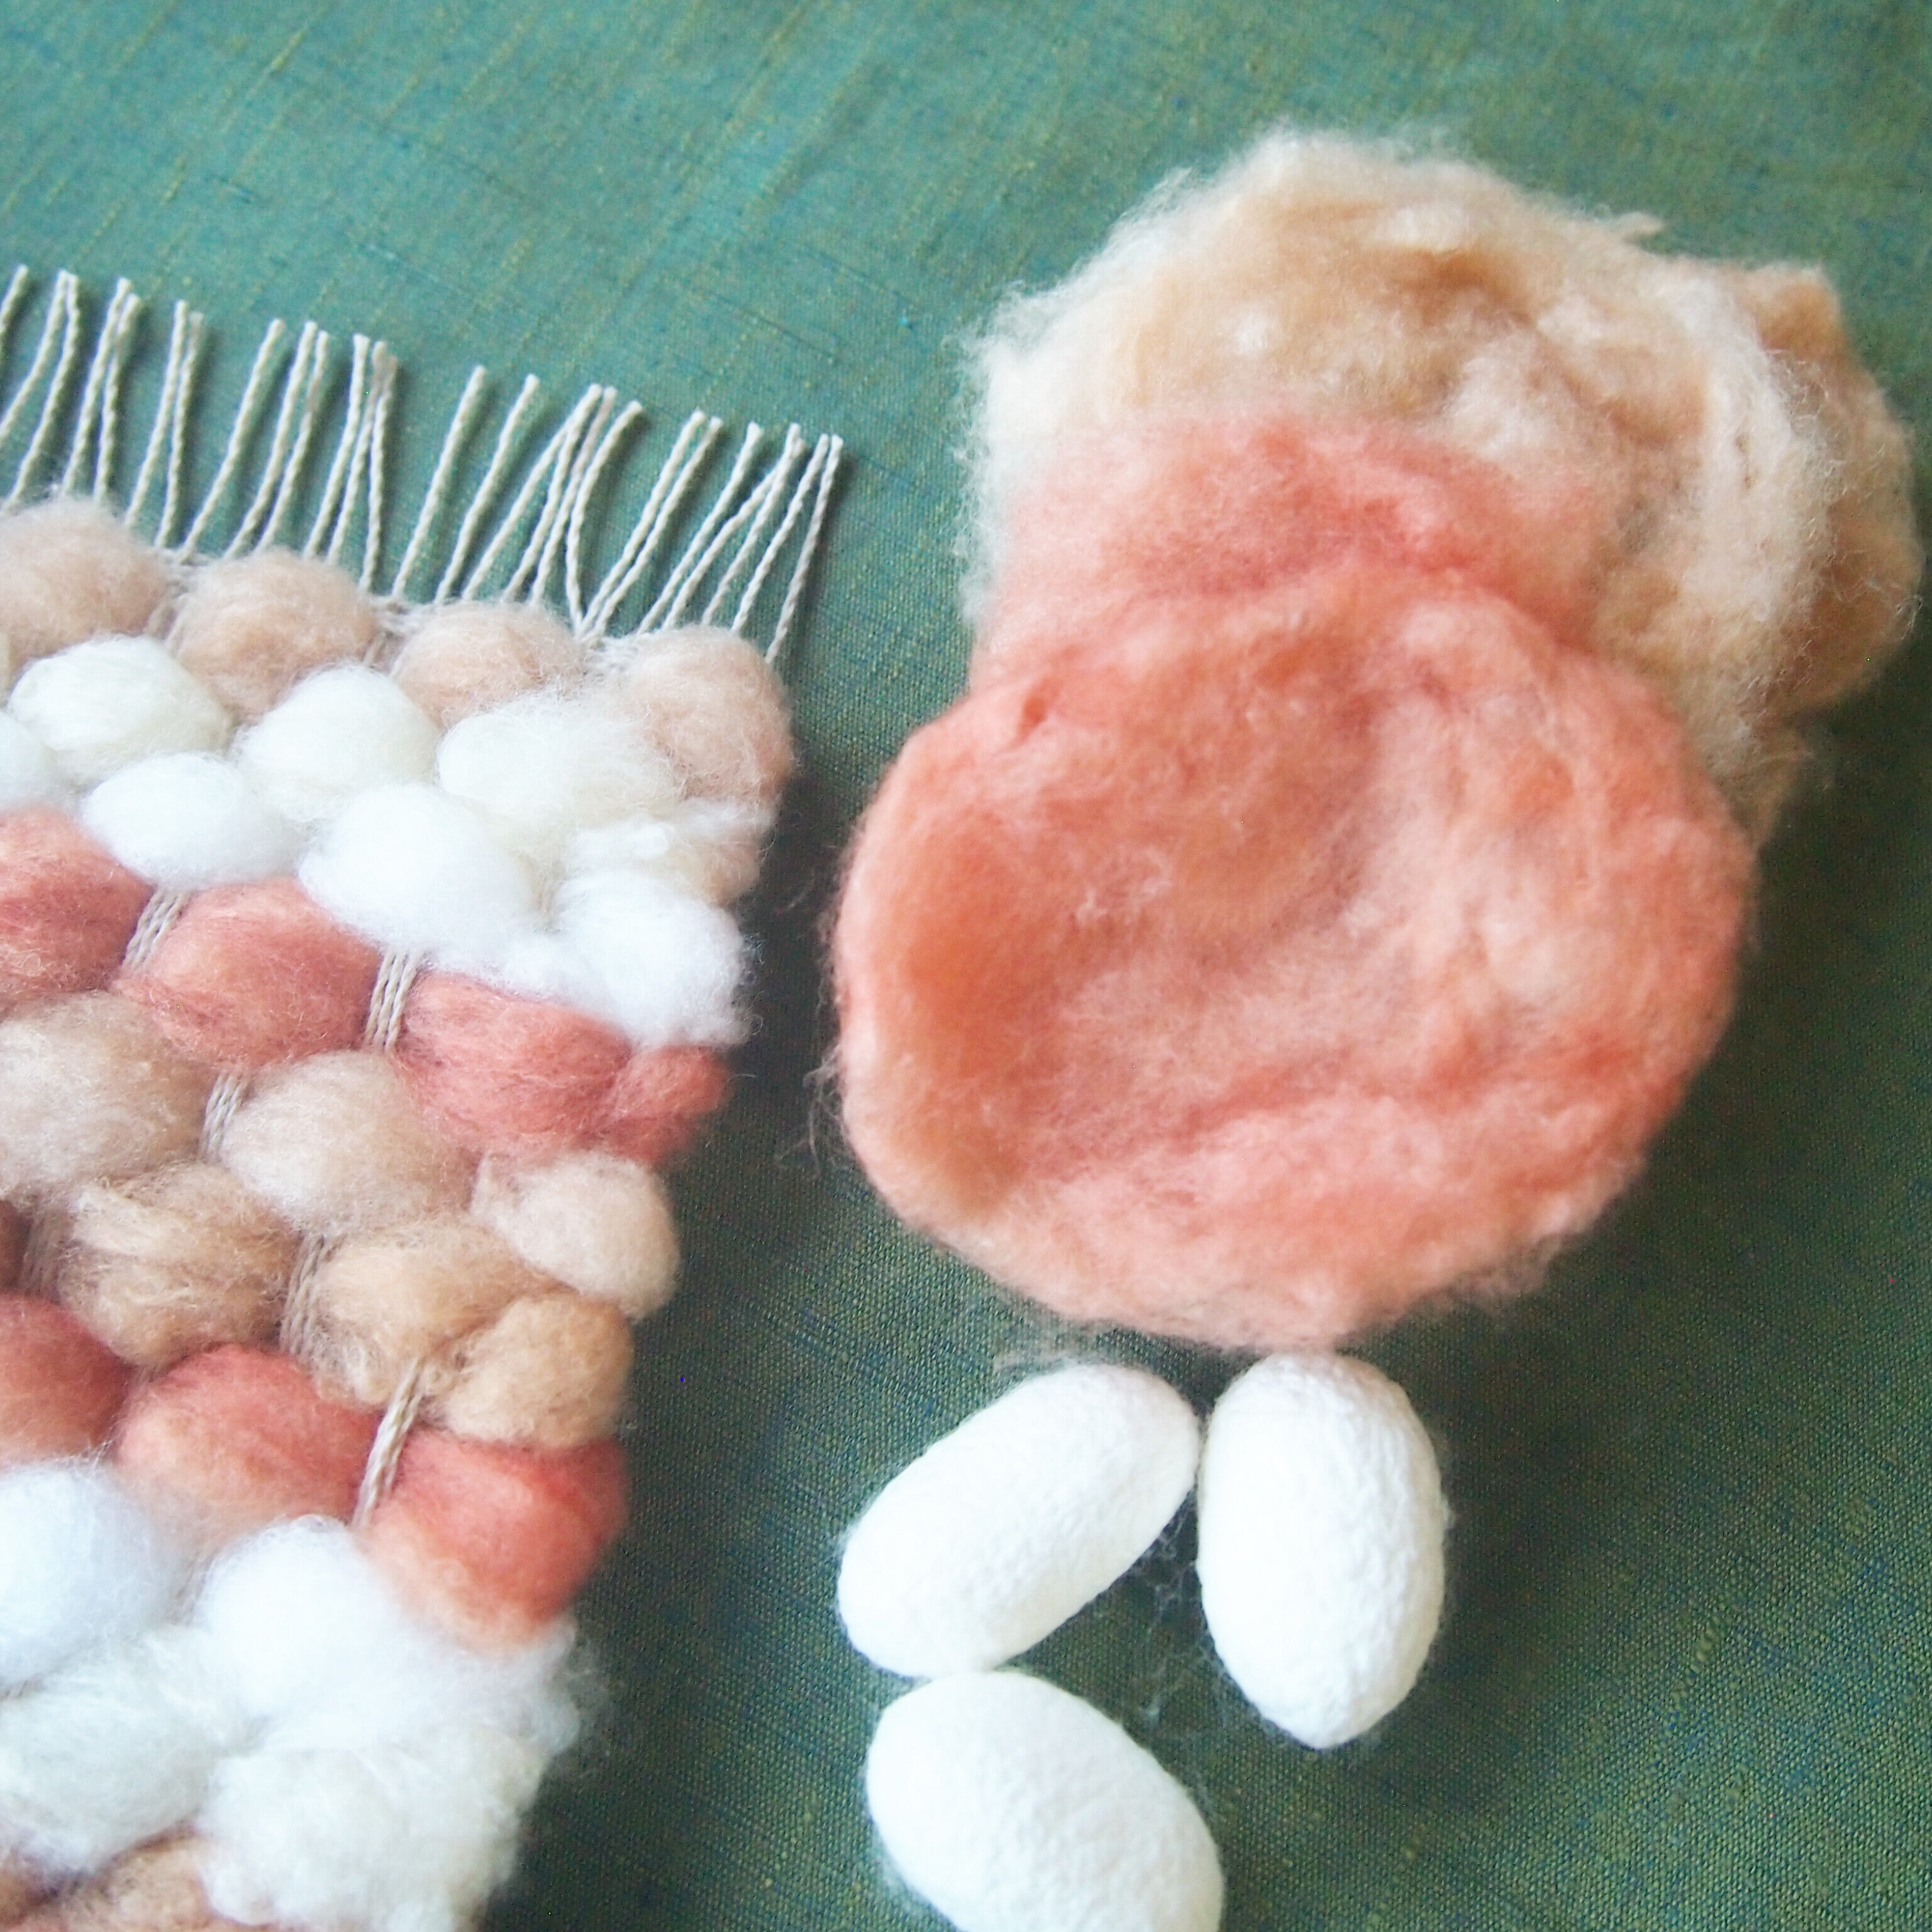 ふわふわシルクで遊ぼ 「草木染め真綿で織るミニマット作り」の写真3枚目